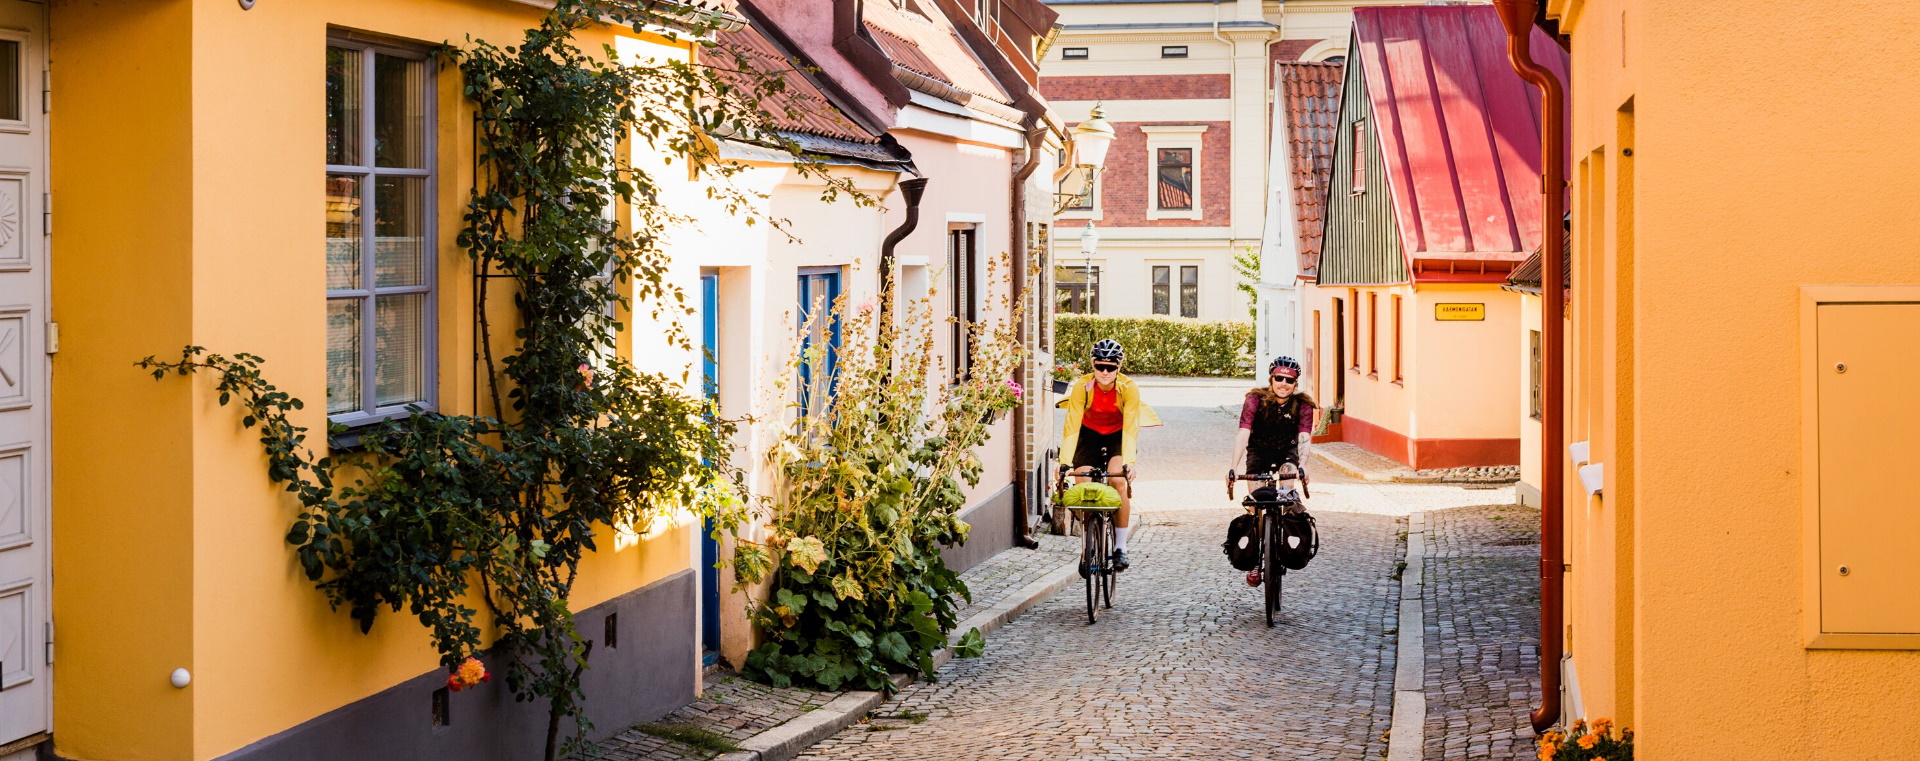 Cykla Sydkustleden_Ystad_foto Apelöga